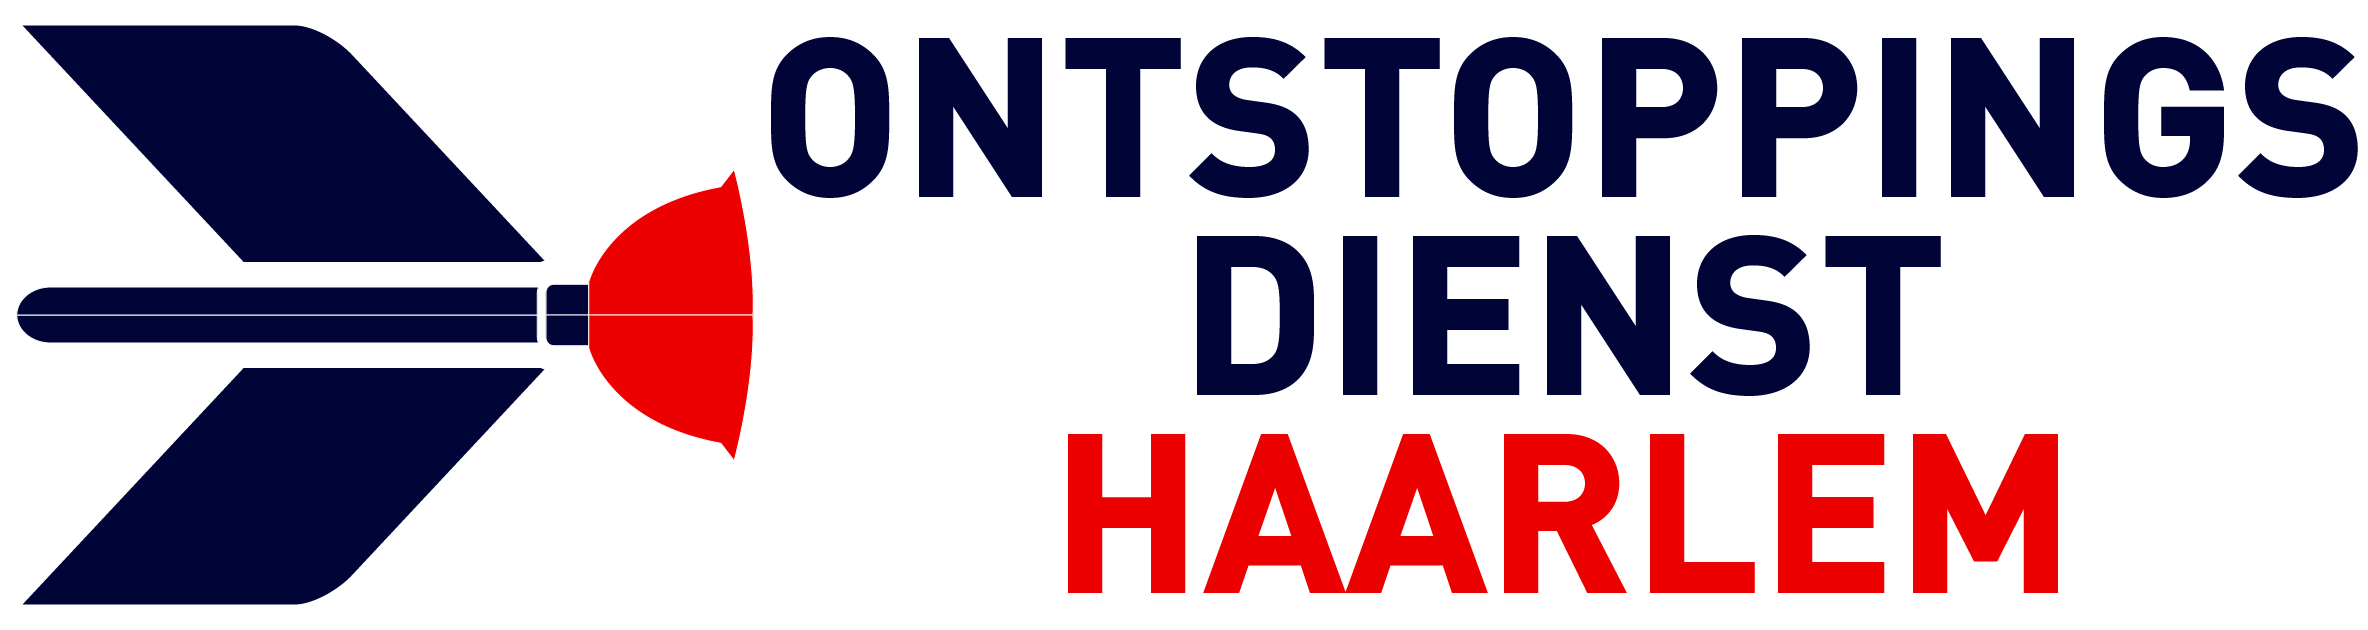 Ontstoppingsdienst Haarlem logo